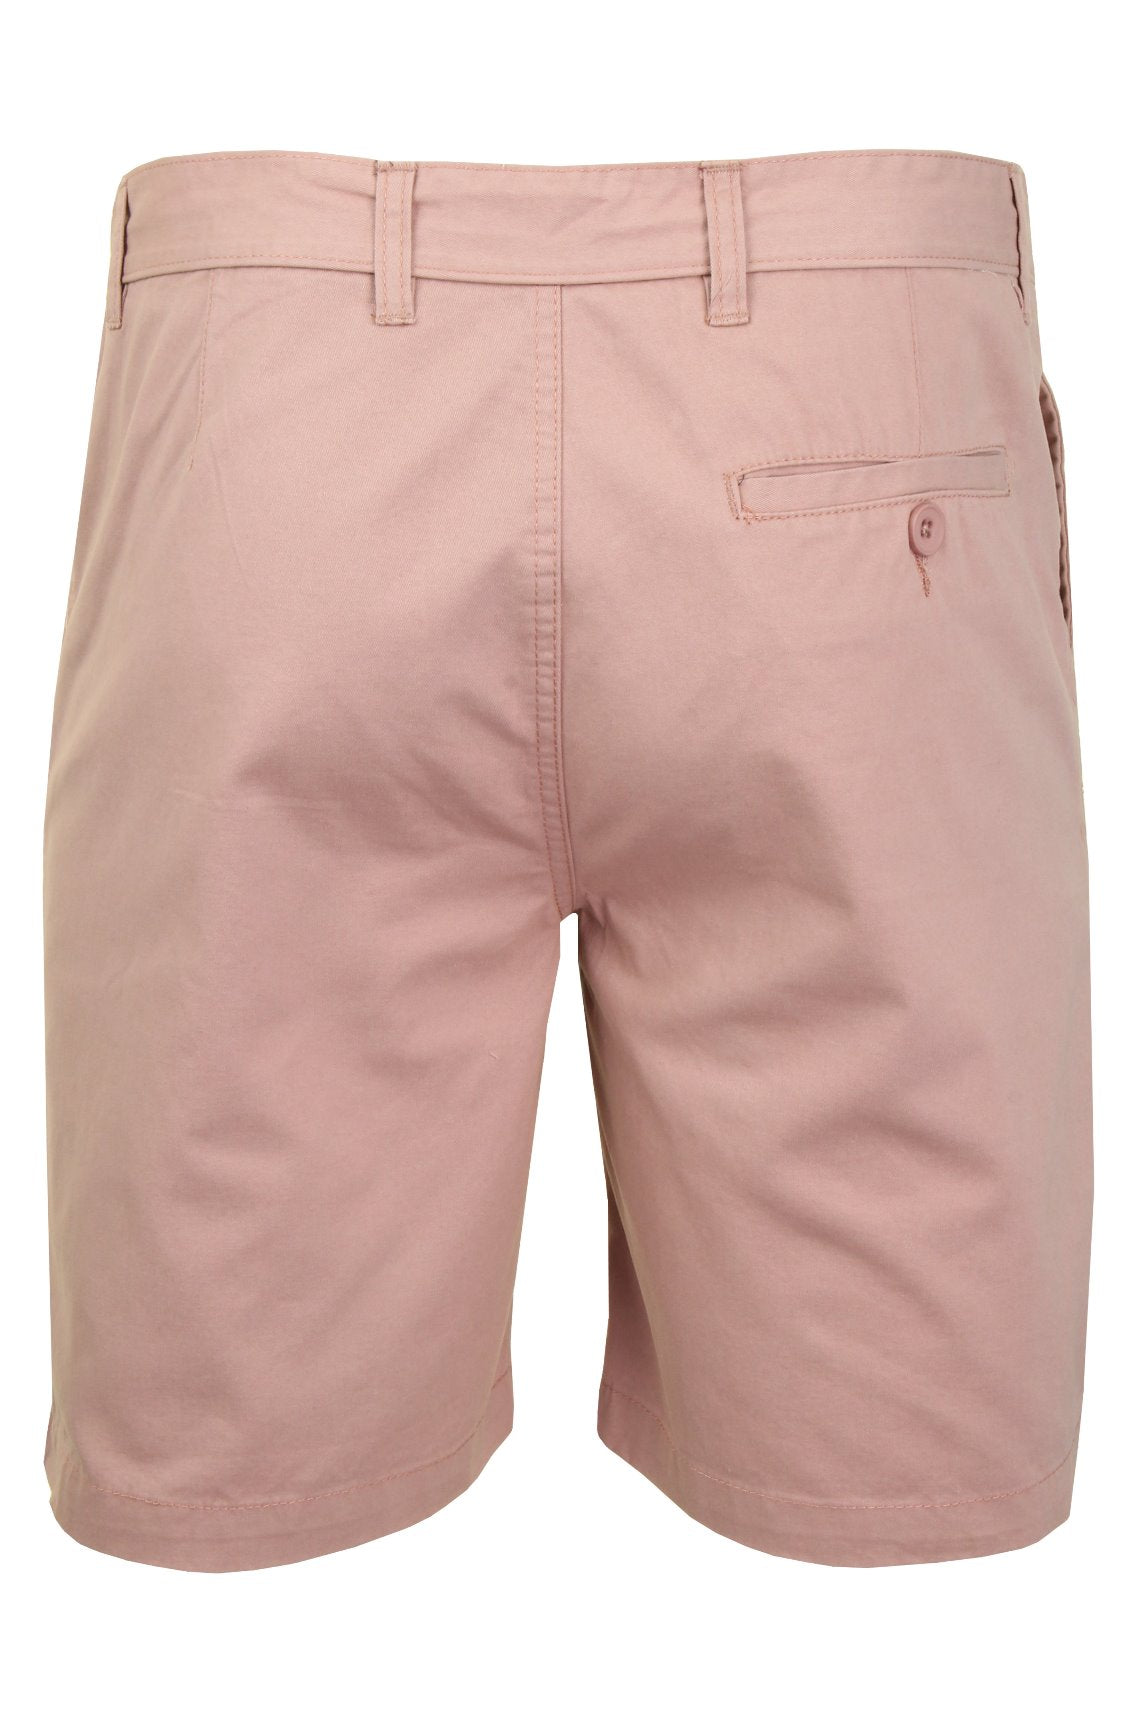 Xact Chino Shorts Mens Soft Feel Cotton Fashion Garment-3